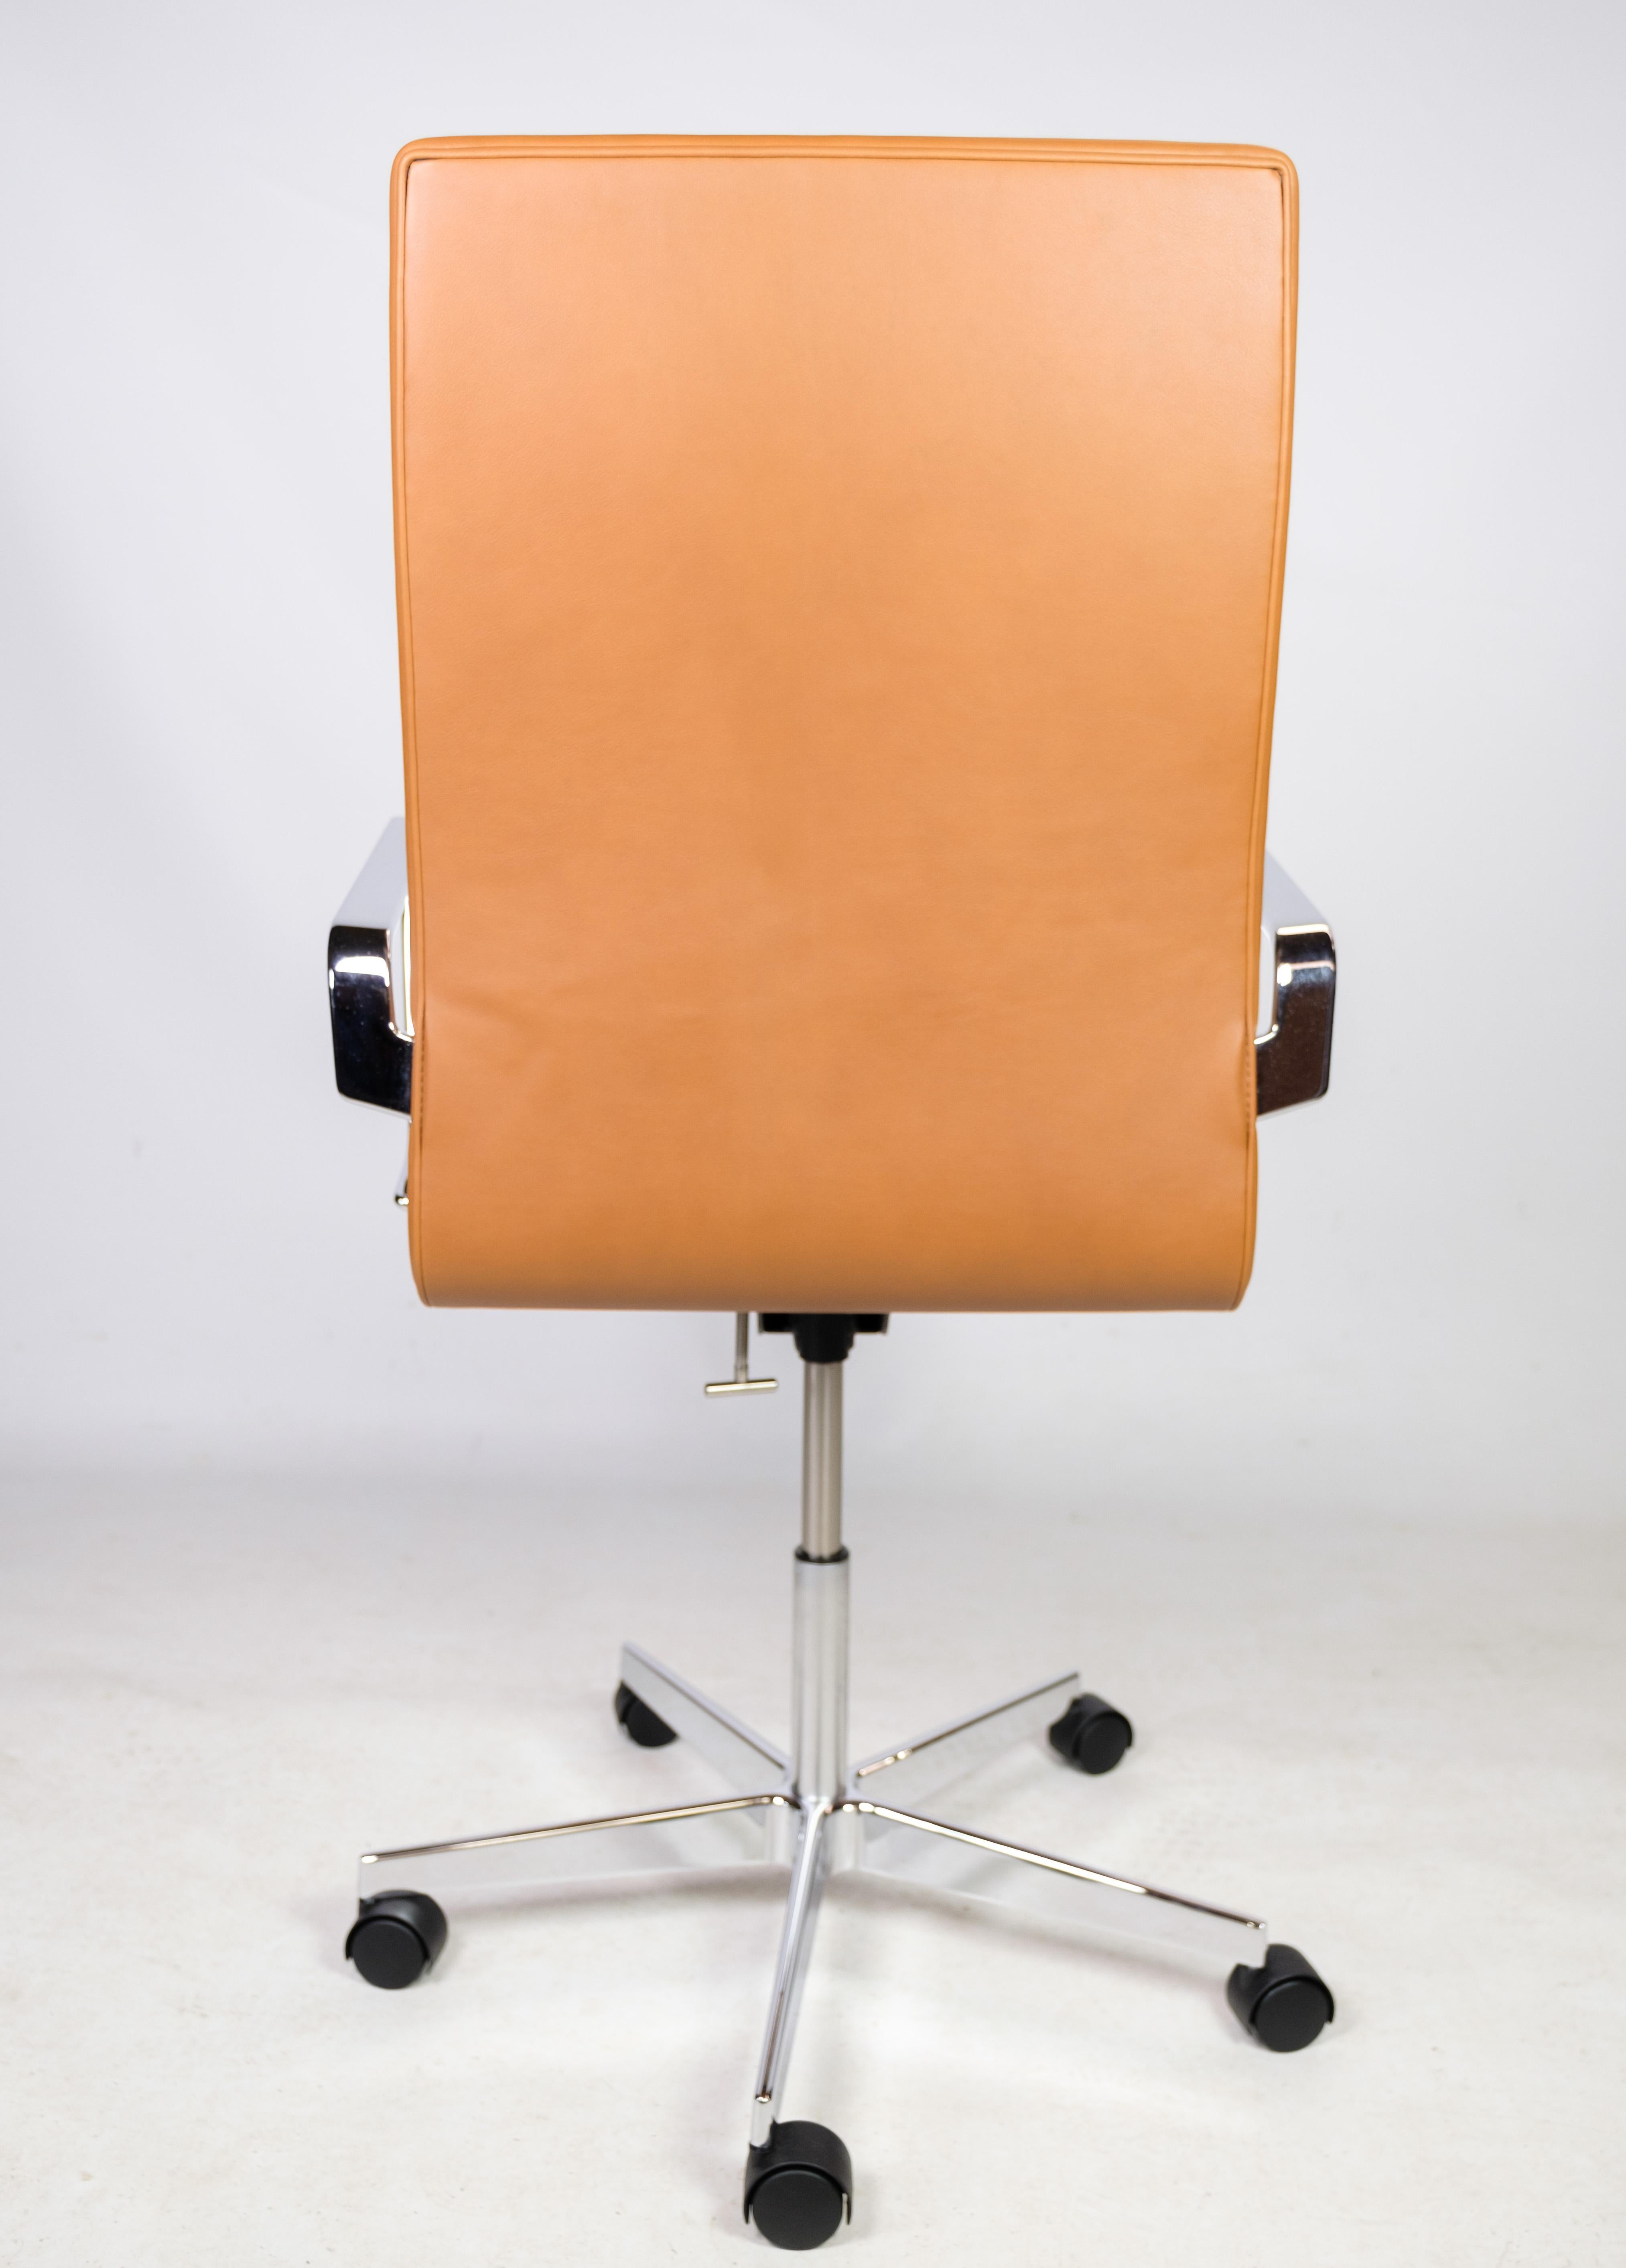 Oxford Classic Bürostuhl, Modell 3293C, mit originaler cognacfarbener Lederpolsterung, 1963 von Arne Jacobsen entworfen und von Fritz Hansen hergestellt. Der Stuhl ist in einem guten gebrauchten Zustand.
H - 100-113, B - 60 cm, T - 60 cm und SH -